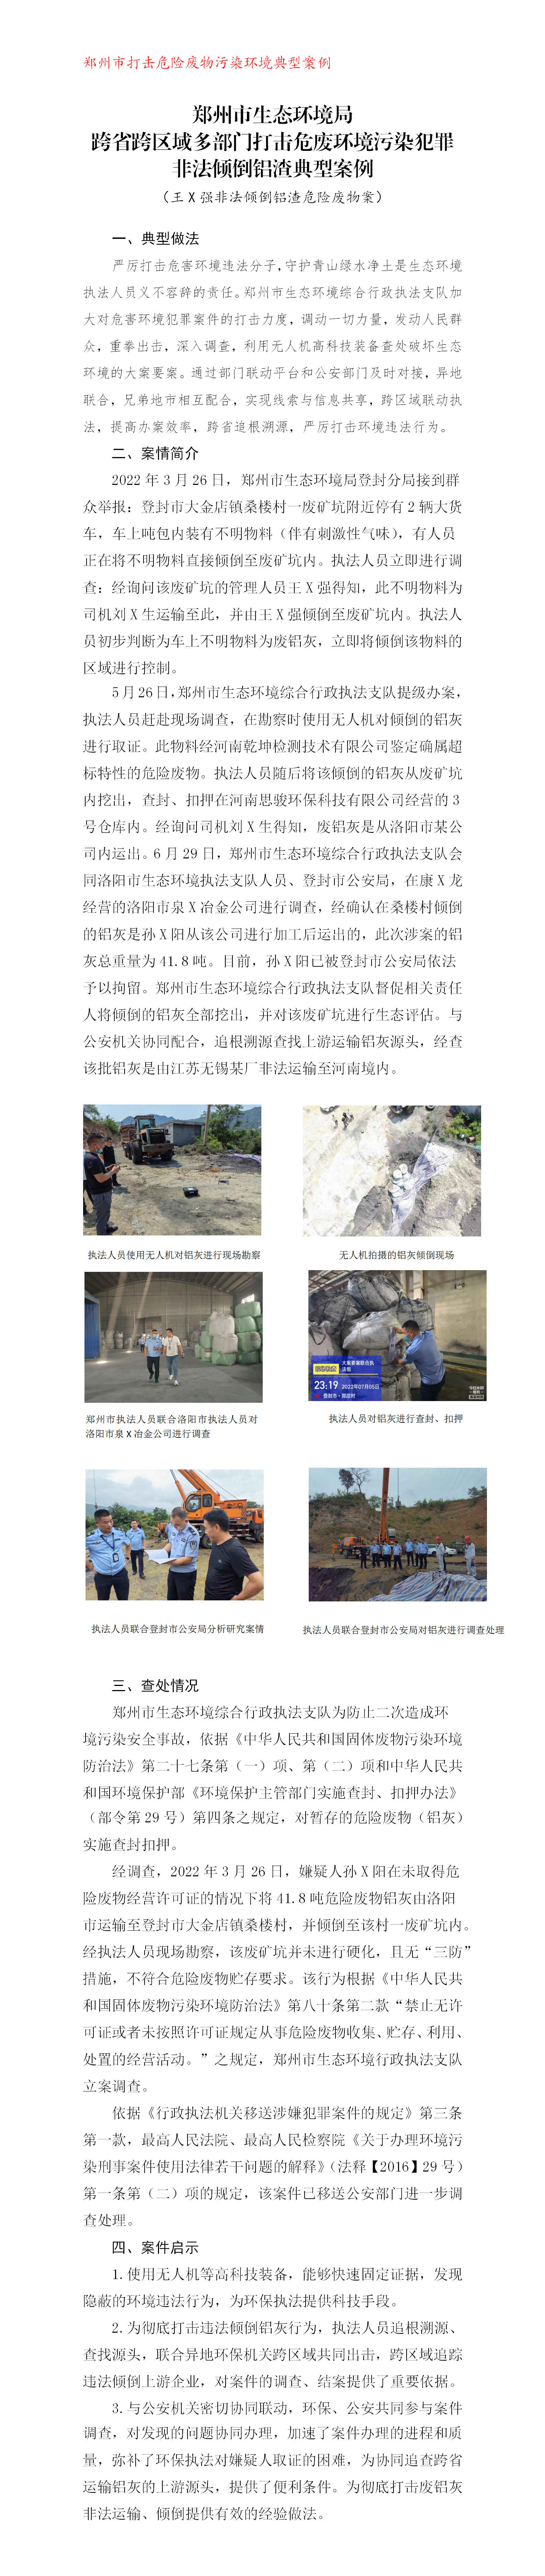 （苏红超）郑州市生态环境局跨省跨区域多部门打击危废环境污染犯罪非法倾倒铝渣典型案例_01.png